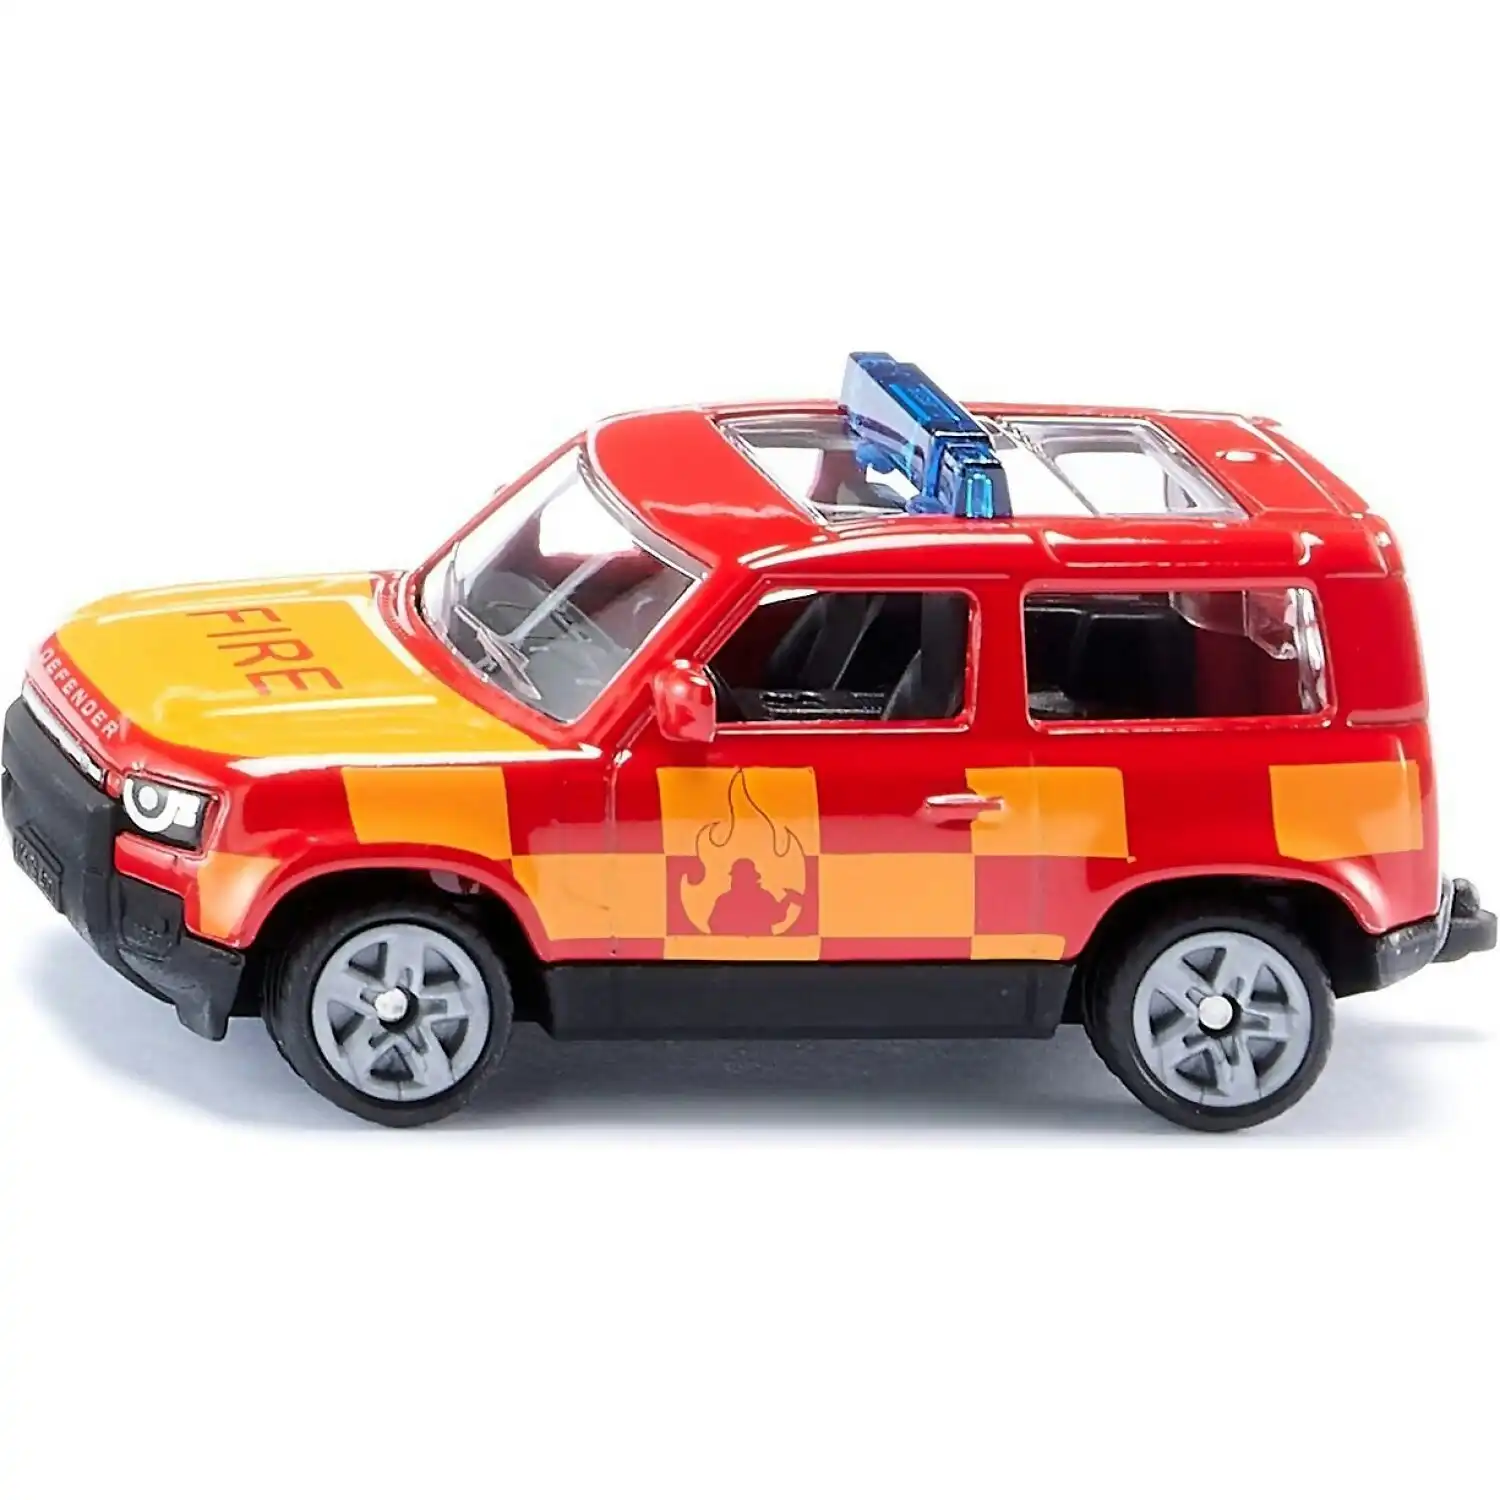 Siku - Land Rover Defender Fire Brigade